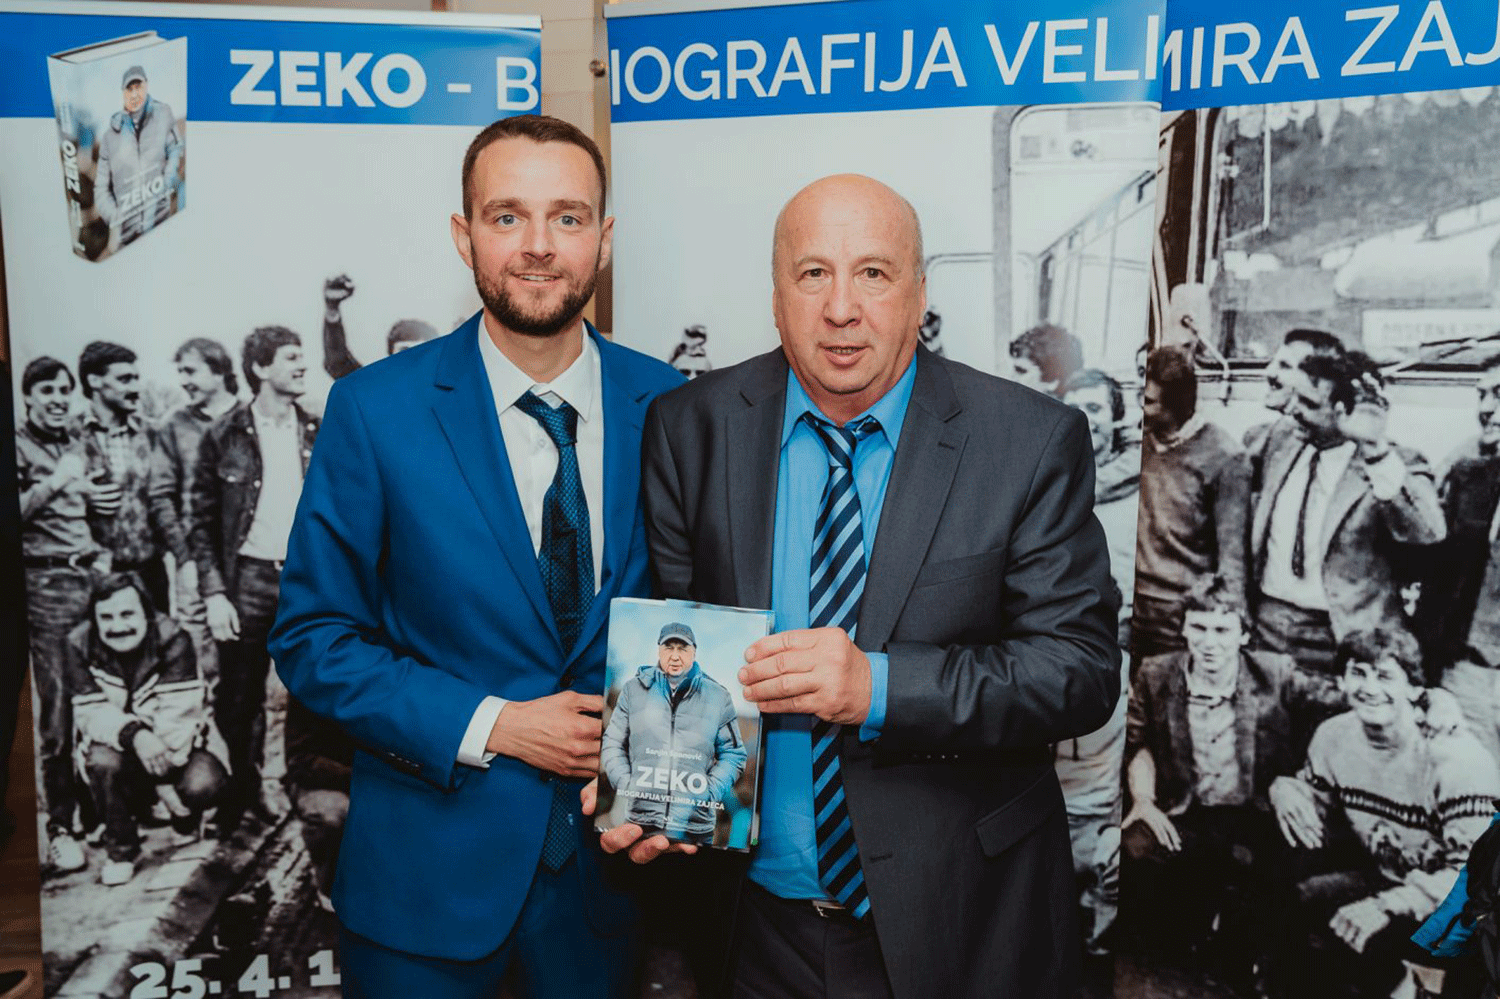 Najava predstavljanja biografije nogometne legende Velimira Zajeca 